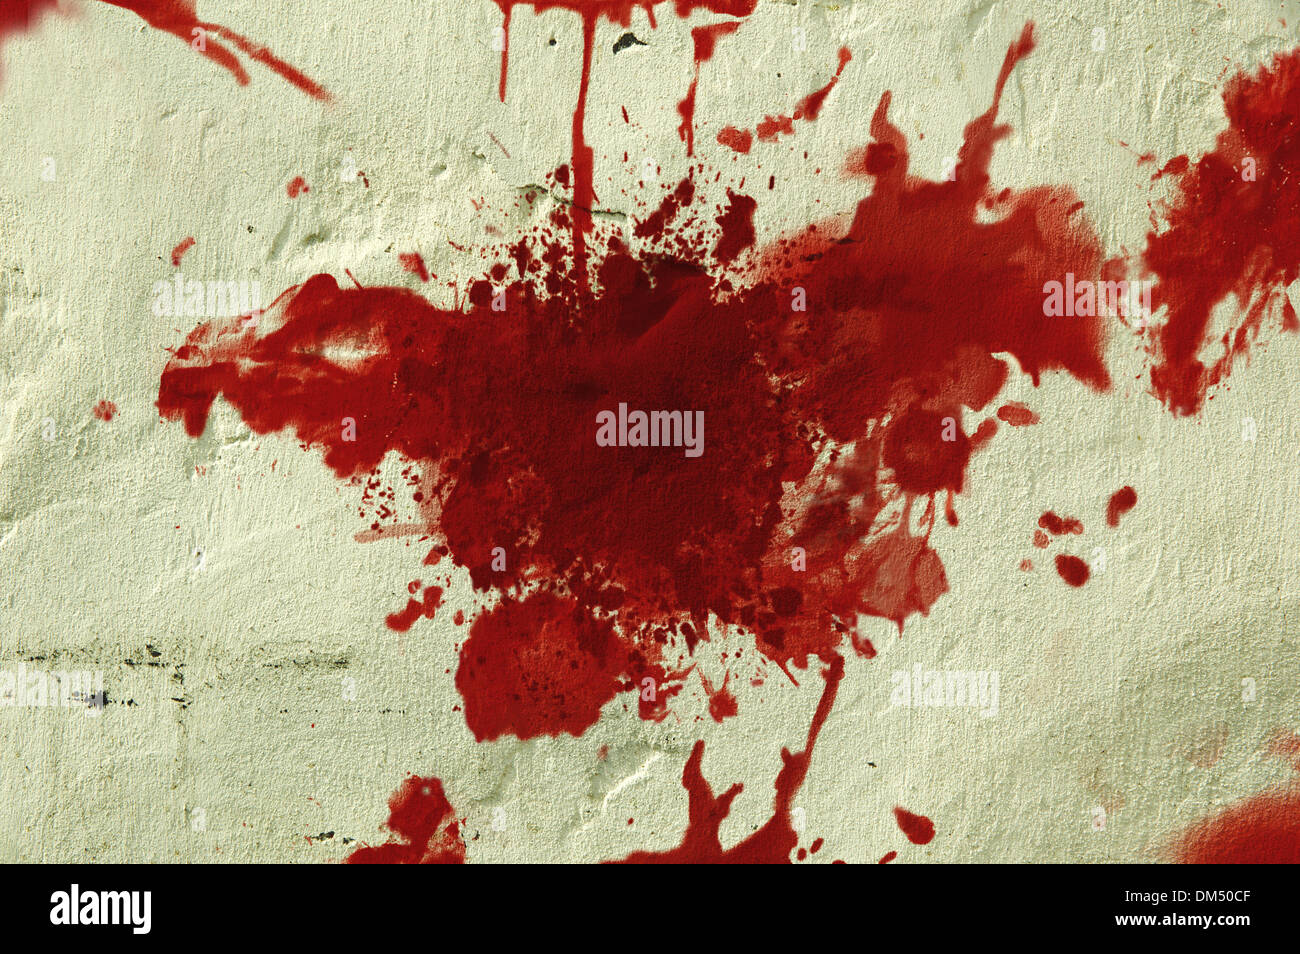 Les projections de sang rouge sur un mur grunge. Banque D'Images